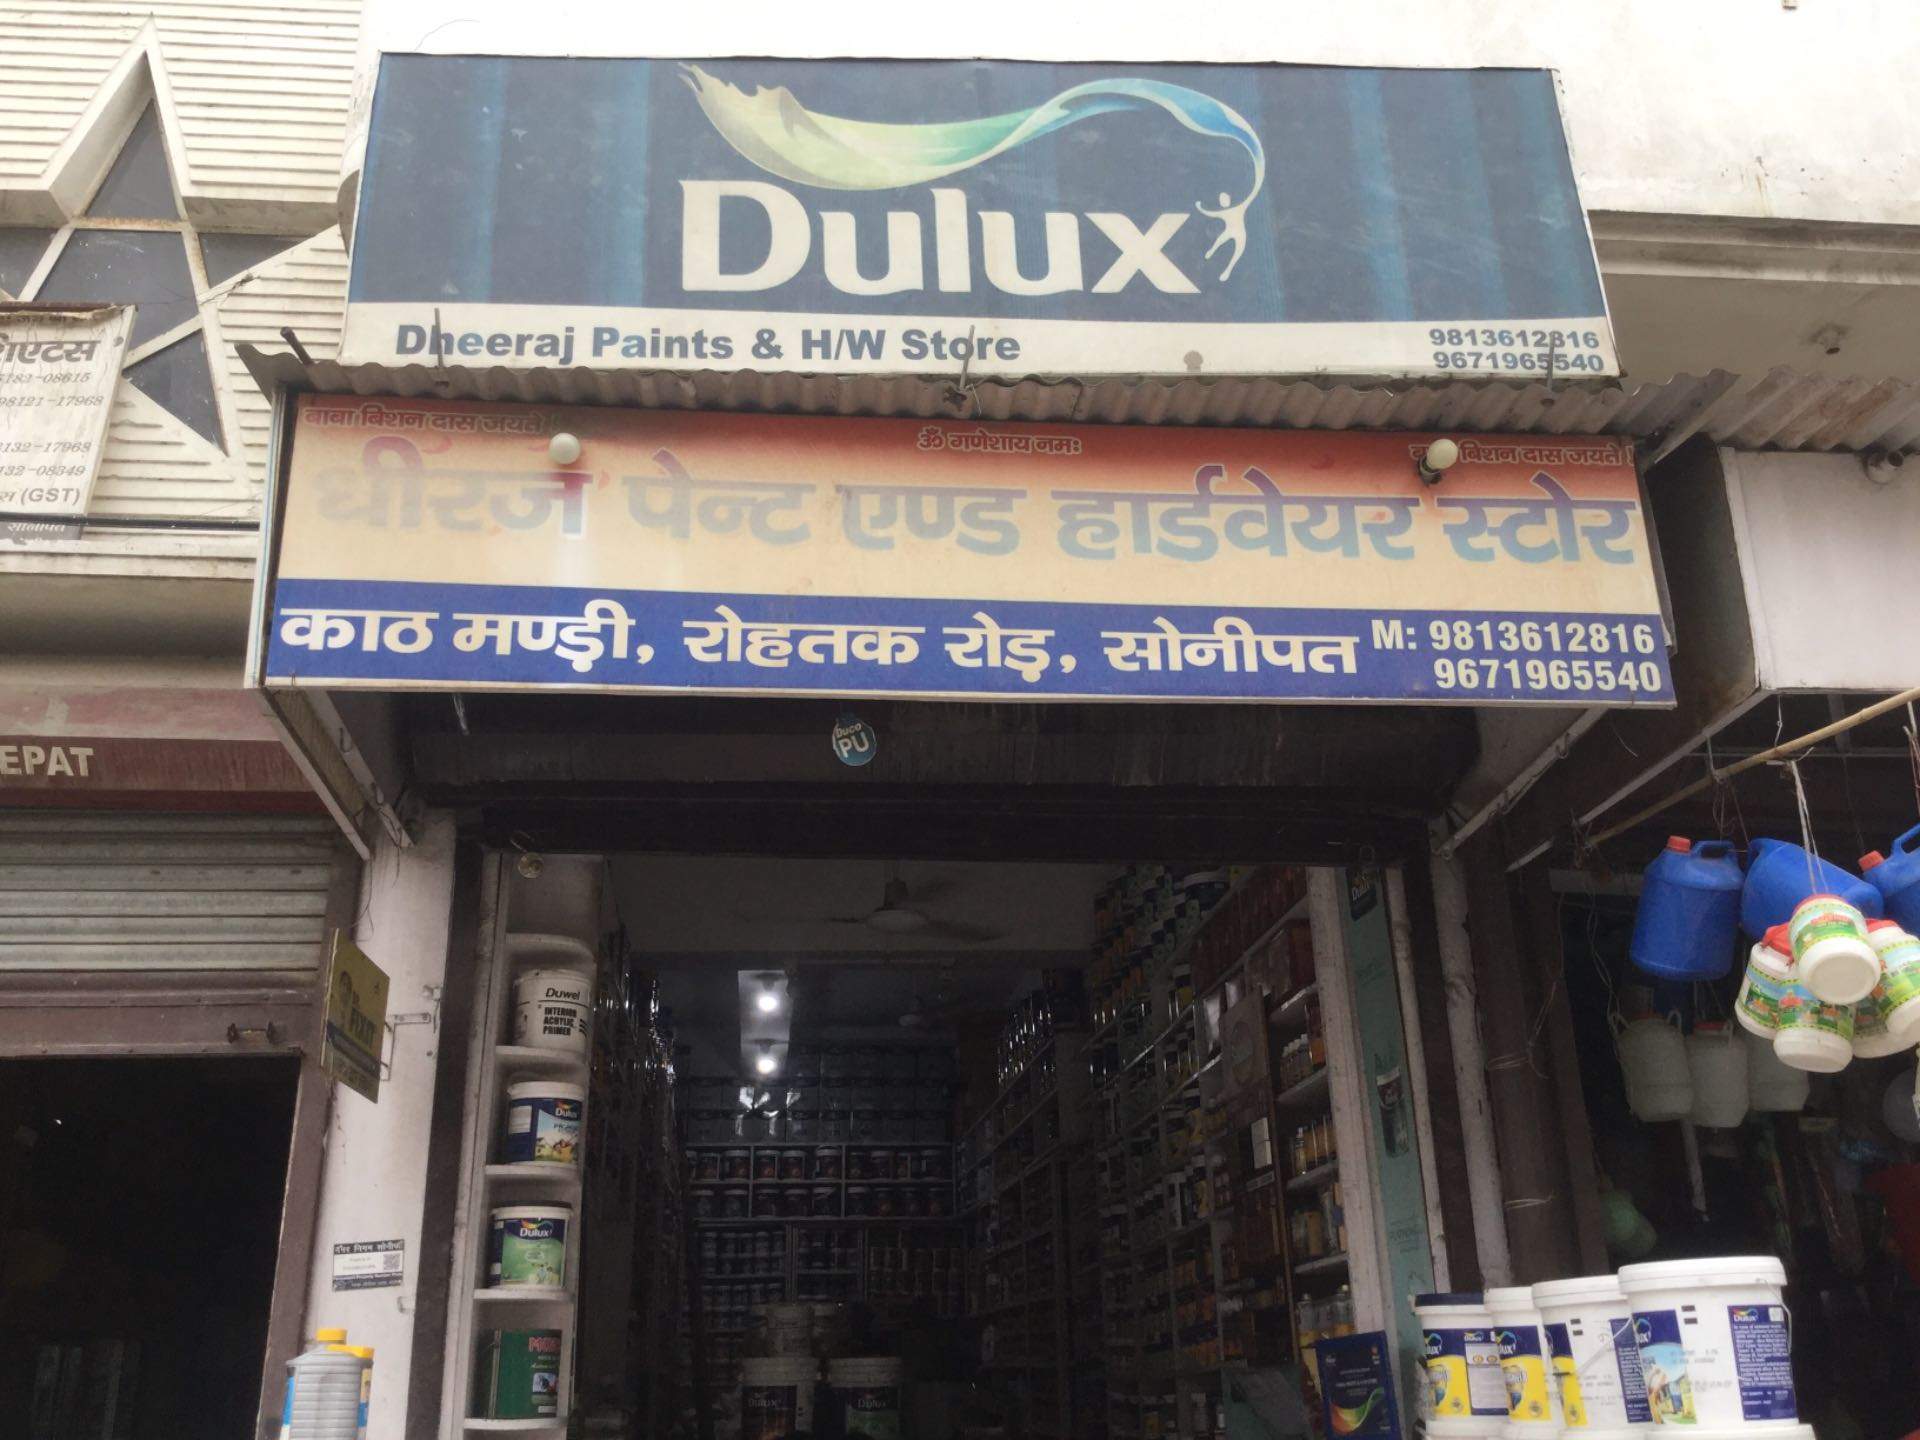 Dheeraj Paint & Hardware Store In Sonipat Ho, Sonepat - Shop Track Sonipat  Haryana - 1920x1440 Wallpaper 